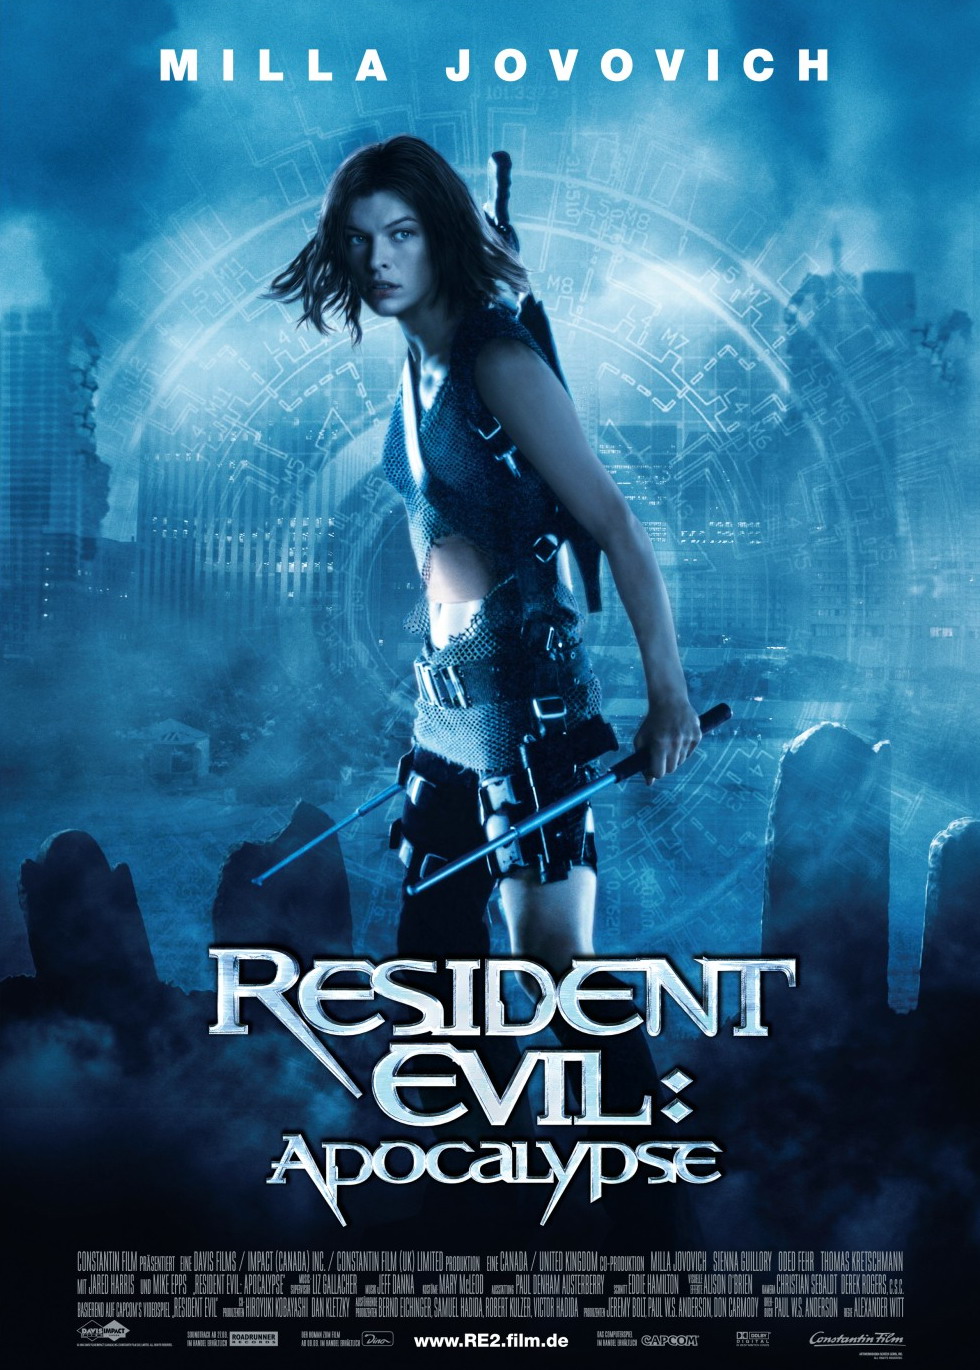 http://static4.wikia.nocookie.net/__cb20120607204303/residentevil/images/9/9b/Resident_Evil_Apocalypse_Poster.jpg